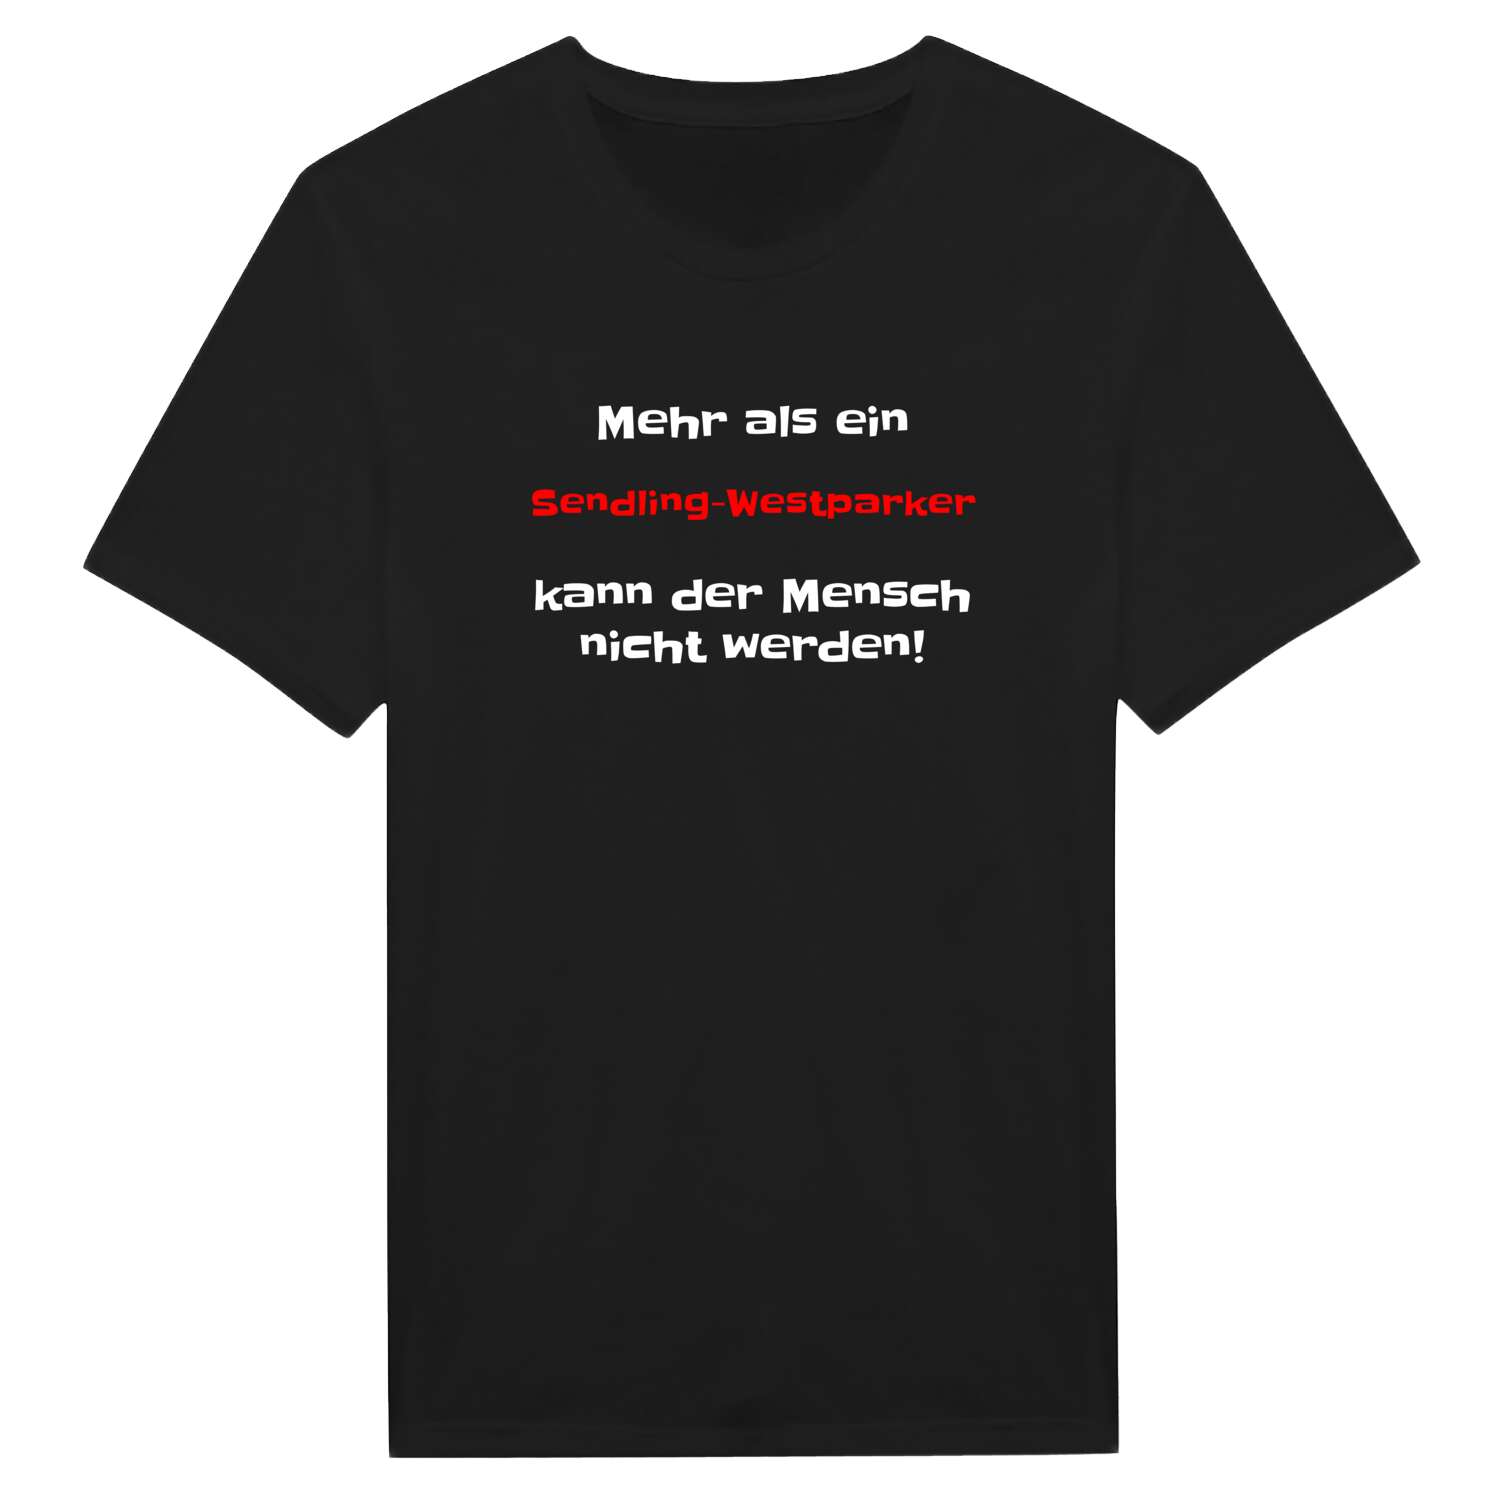 Sendling-Westpark T-Shirt »Mehr als ein«